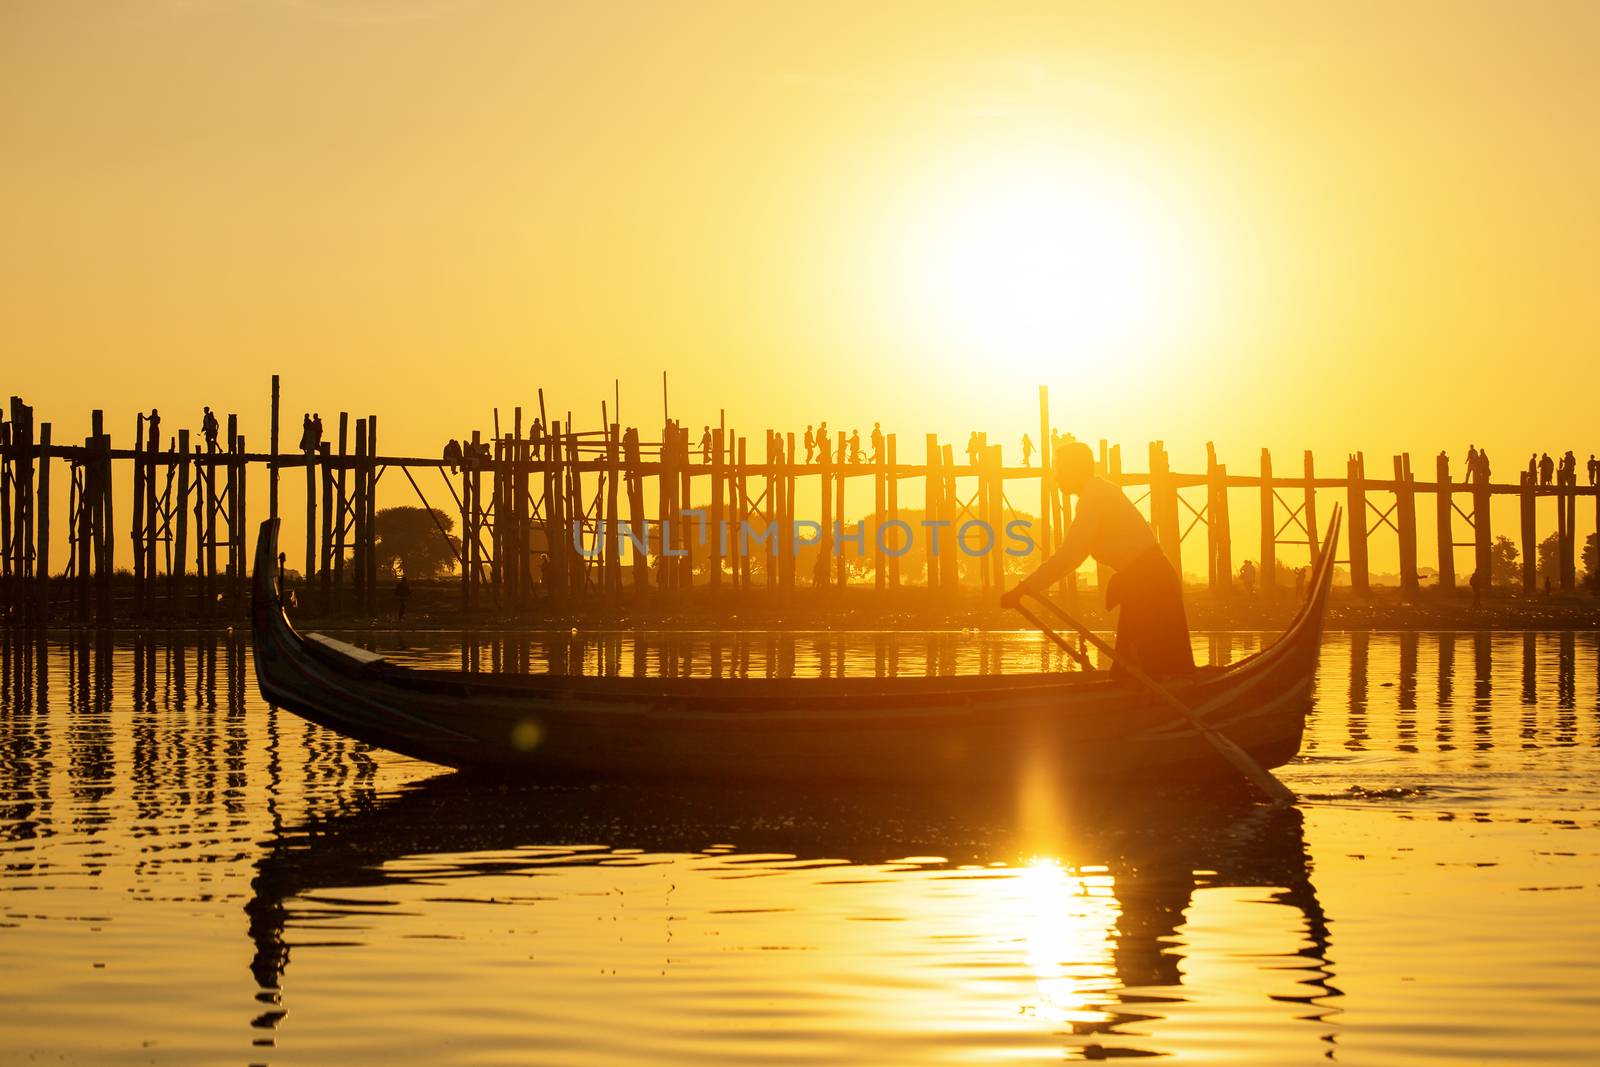 Fishman under U bein bridge at sunset, Myanmar landmark in mandalay